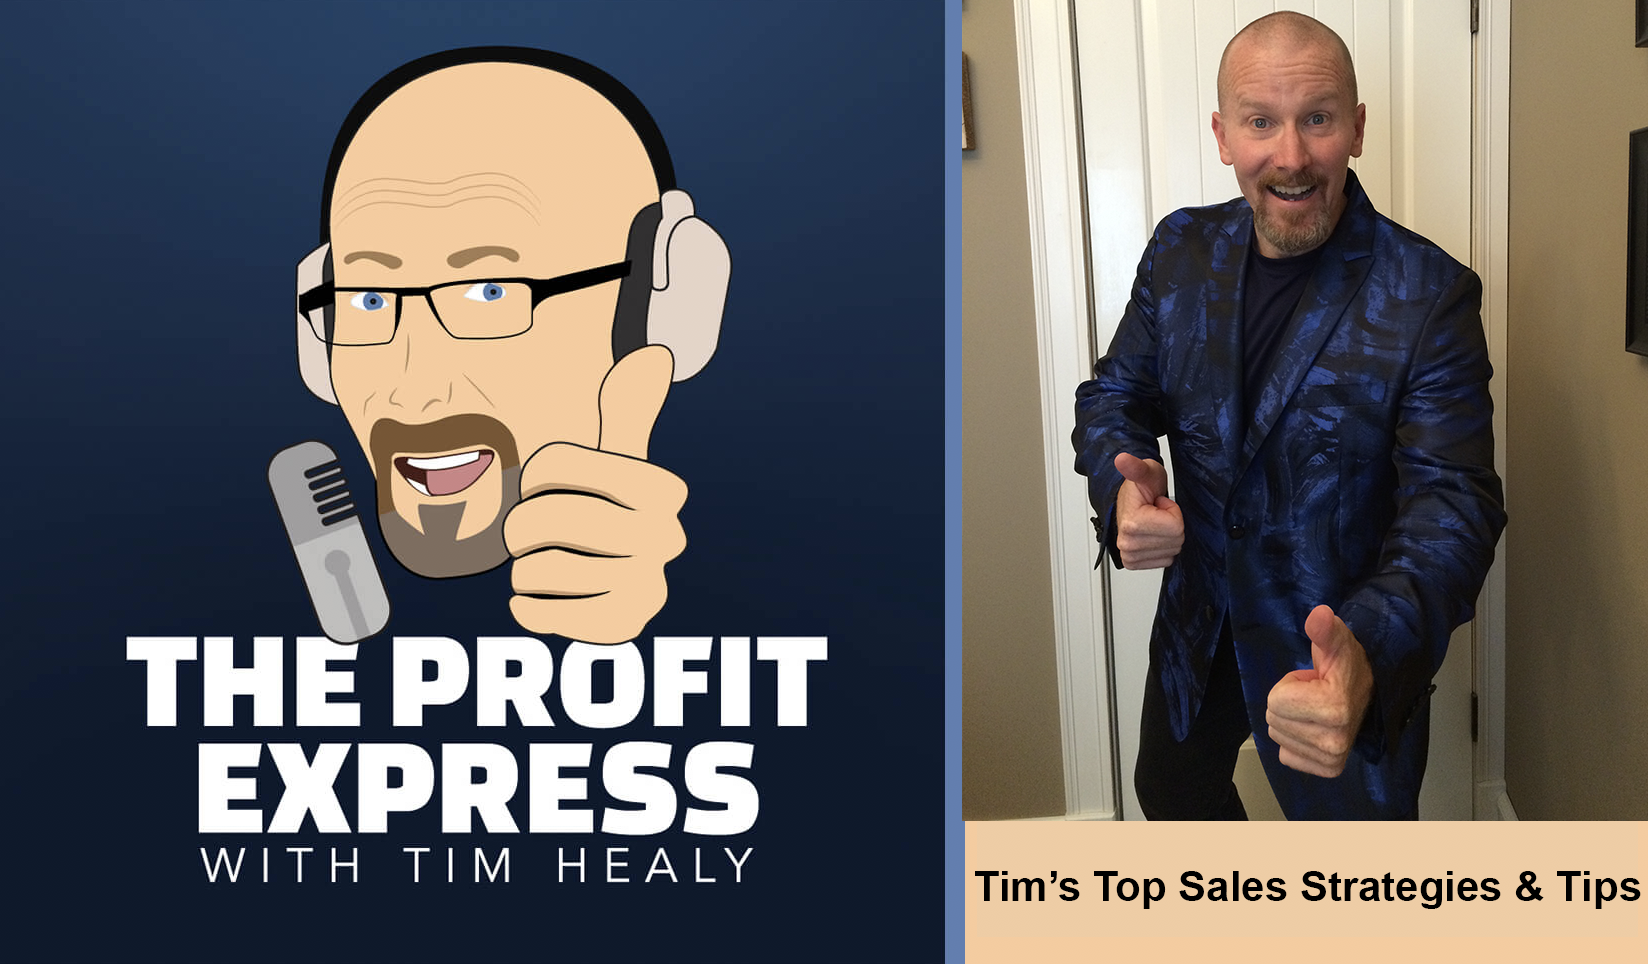 Tim’s Top Sales Strategies & Tips